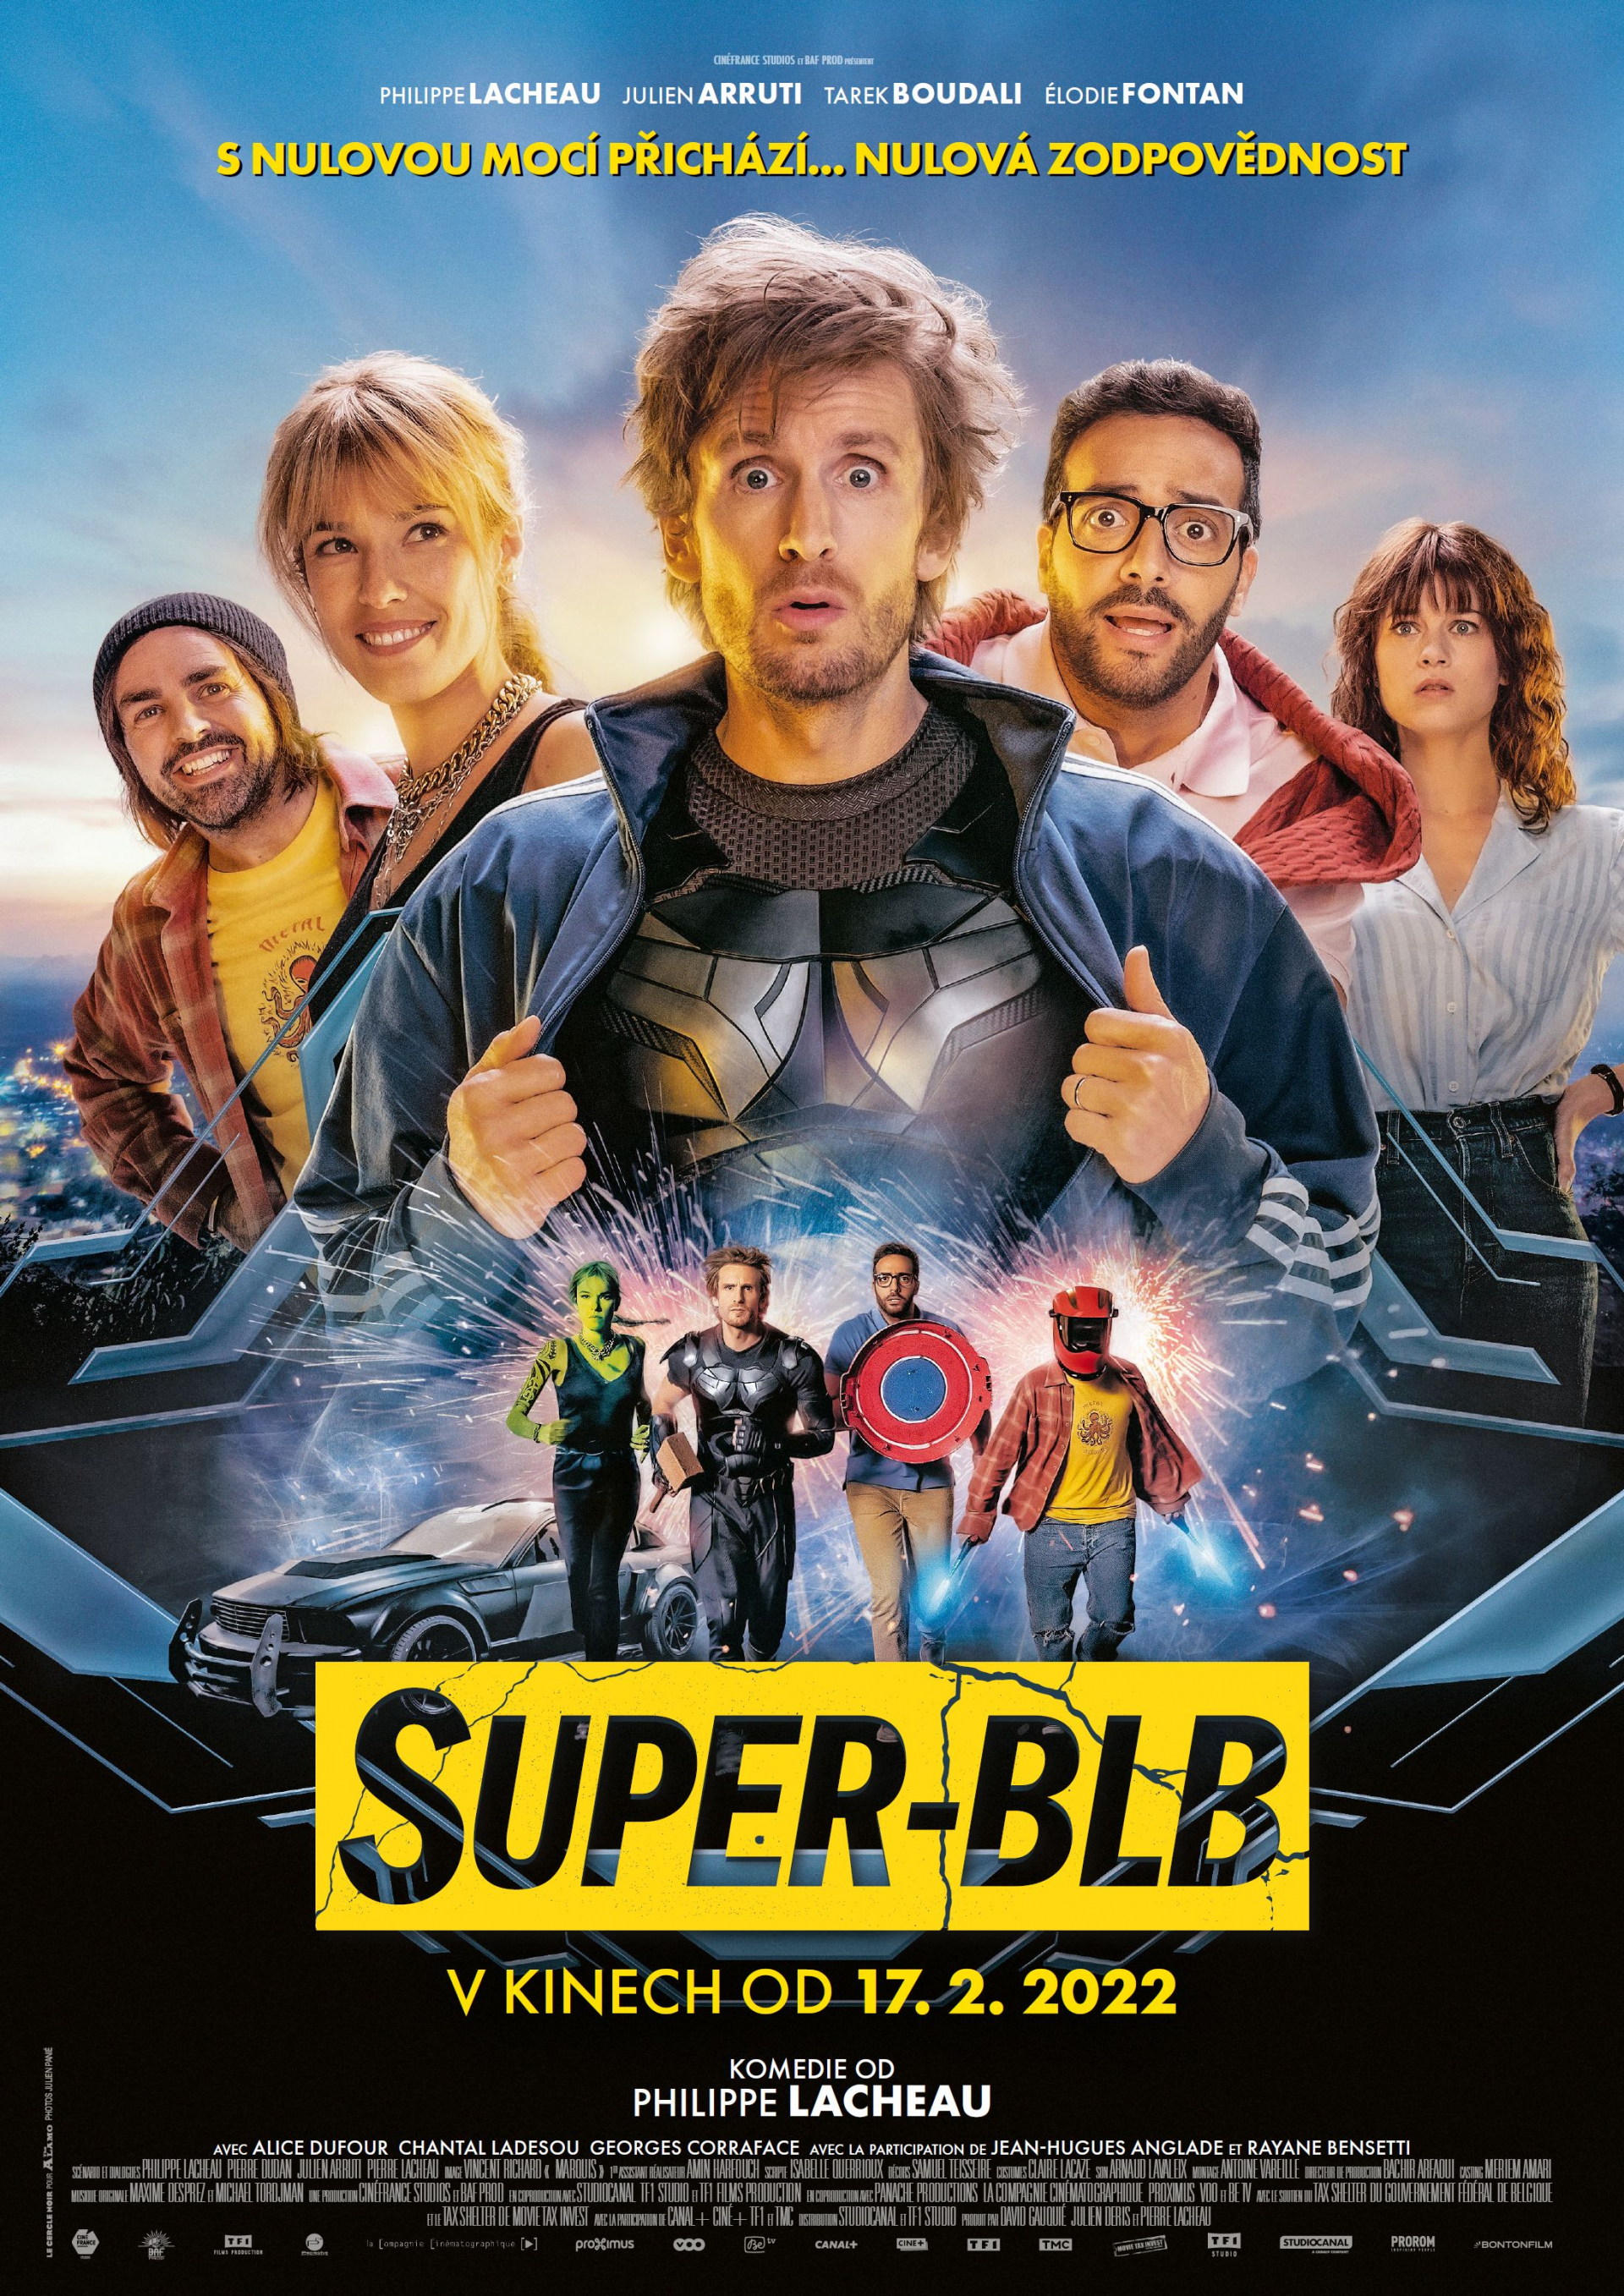 Plakát SUPER BLB